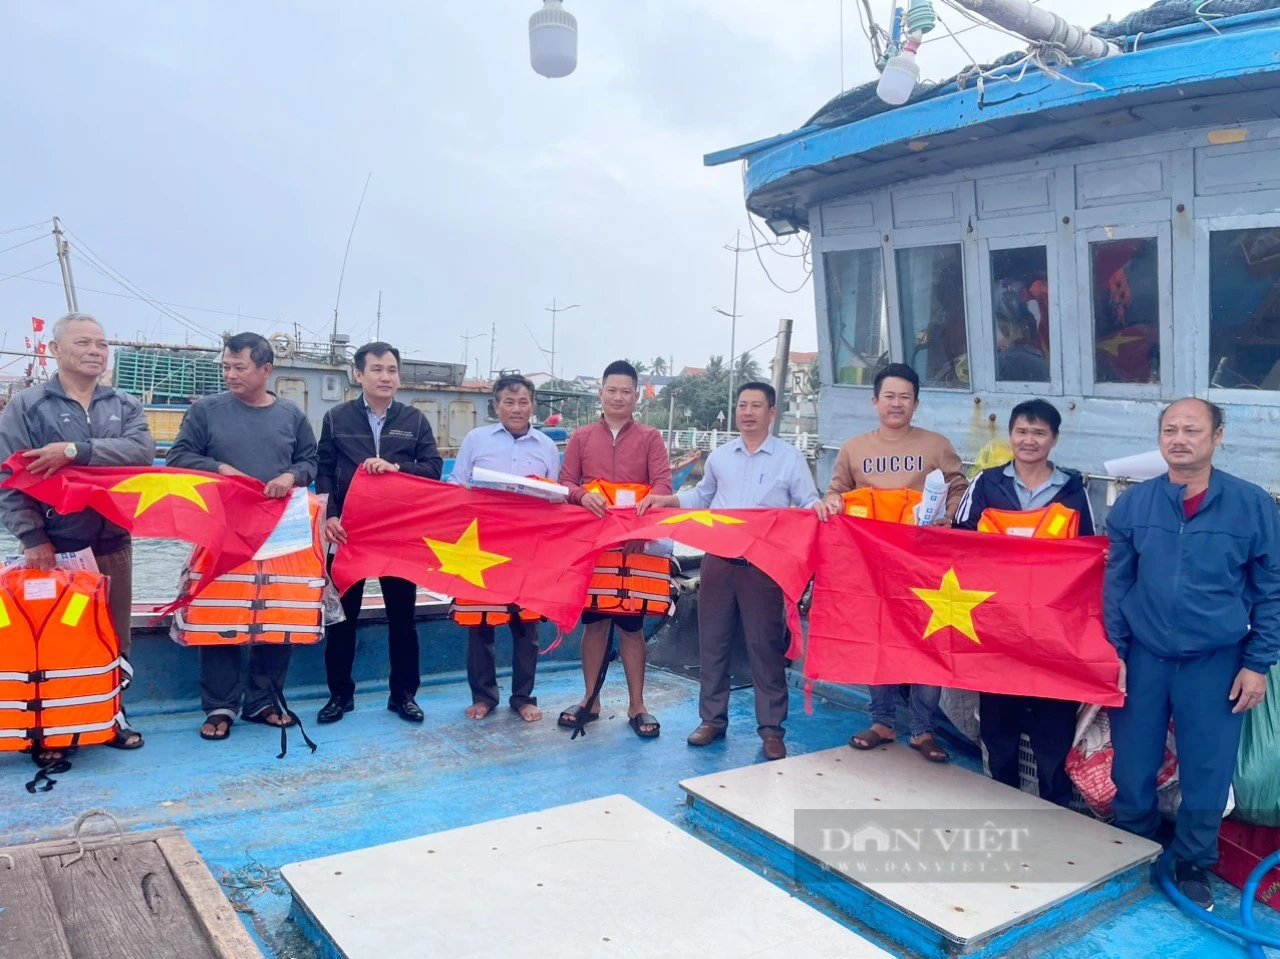 Đại hội VIII Hội NDVN: Ngư dân Quảng Bình mong mở nhiều lớp tập huấn nâng cao kiến thức, kỹ năng để vươn khơi - Ảnh 4.